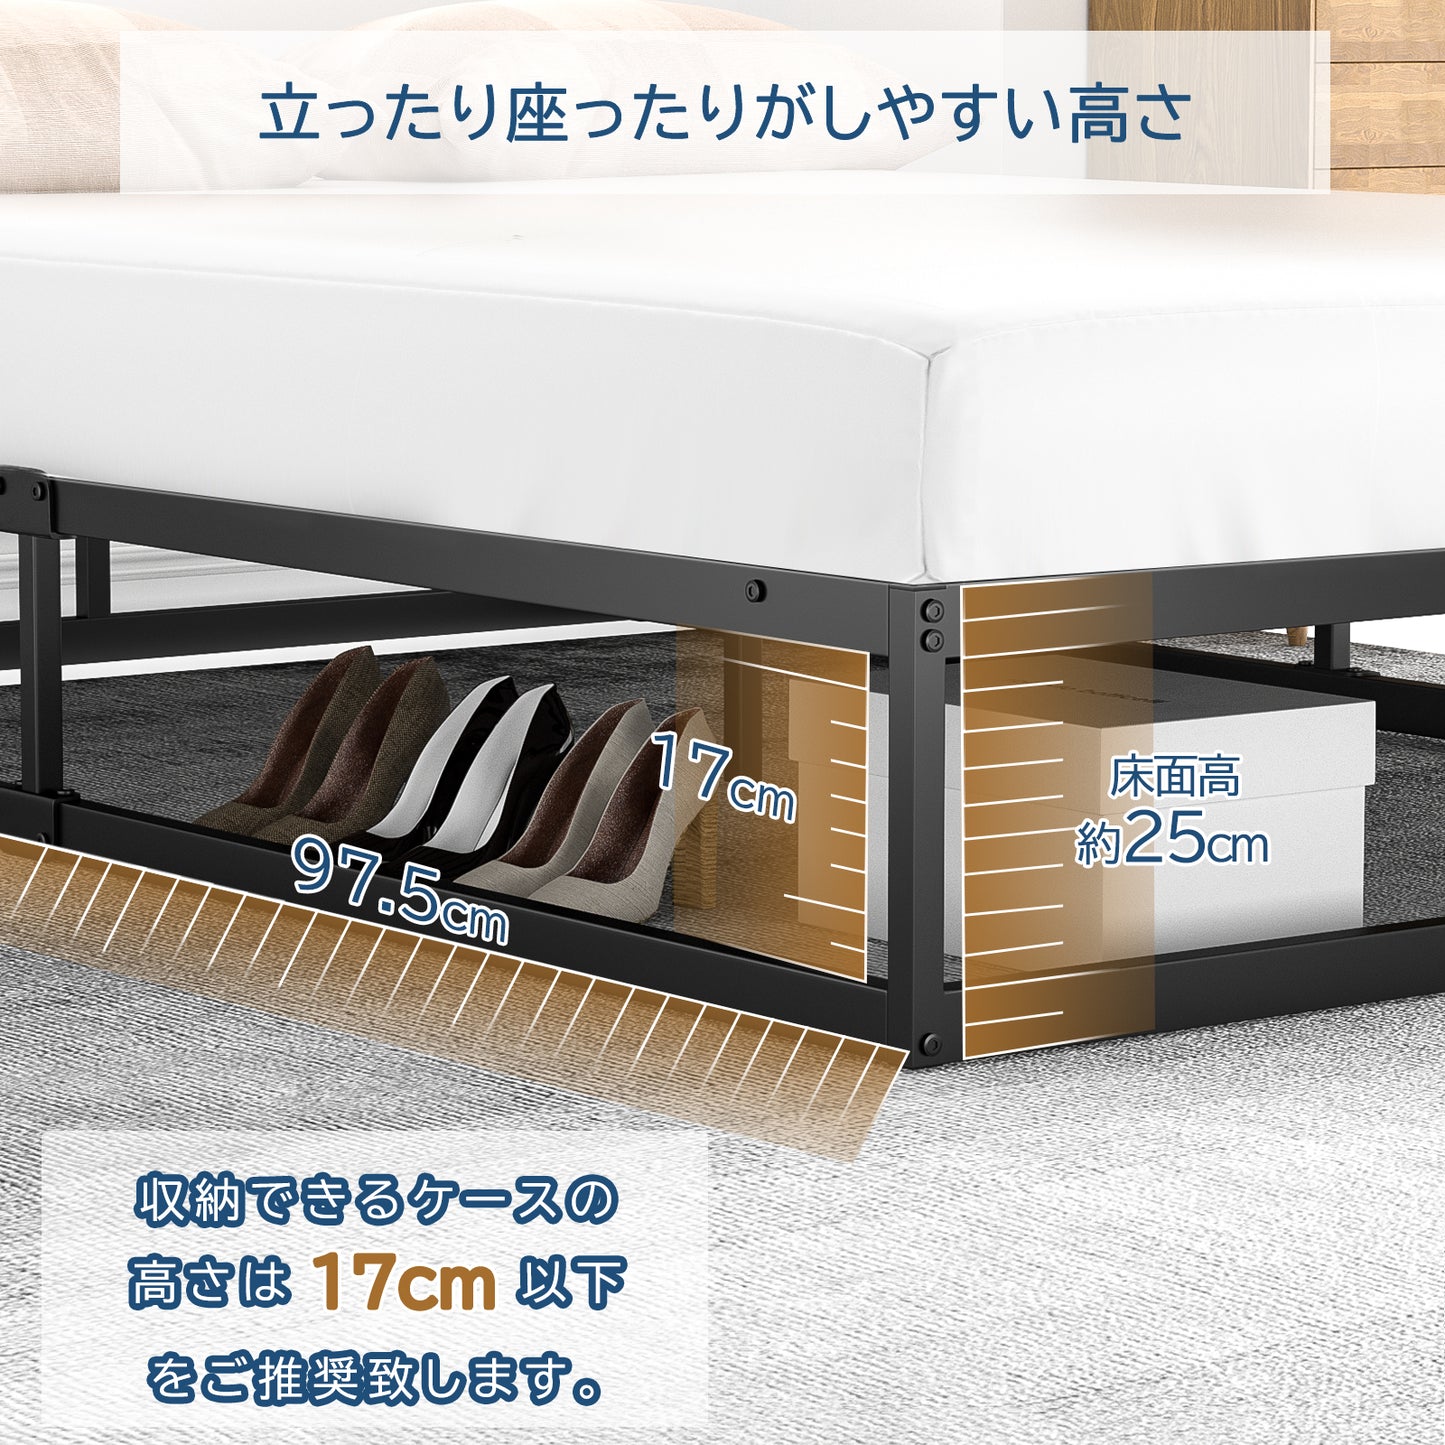 [耐荷重300kg]BD04ベッドフレーム セミダブル パイプベッド 静音 セミダブルベッド すのこベッド下収納 耐久性 通気性 組立簡単 工具付きセミダブルメタルベッド